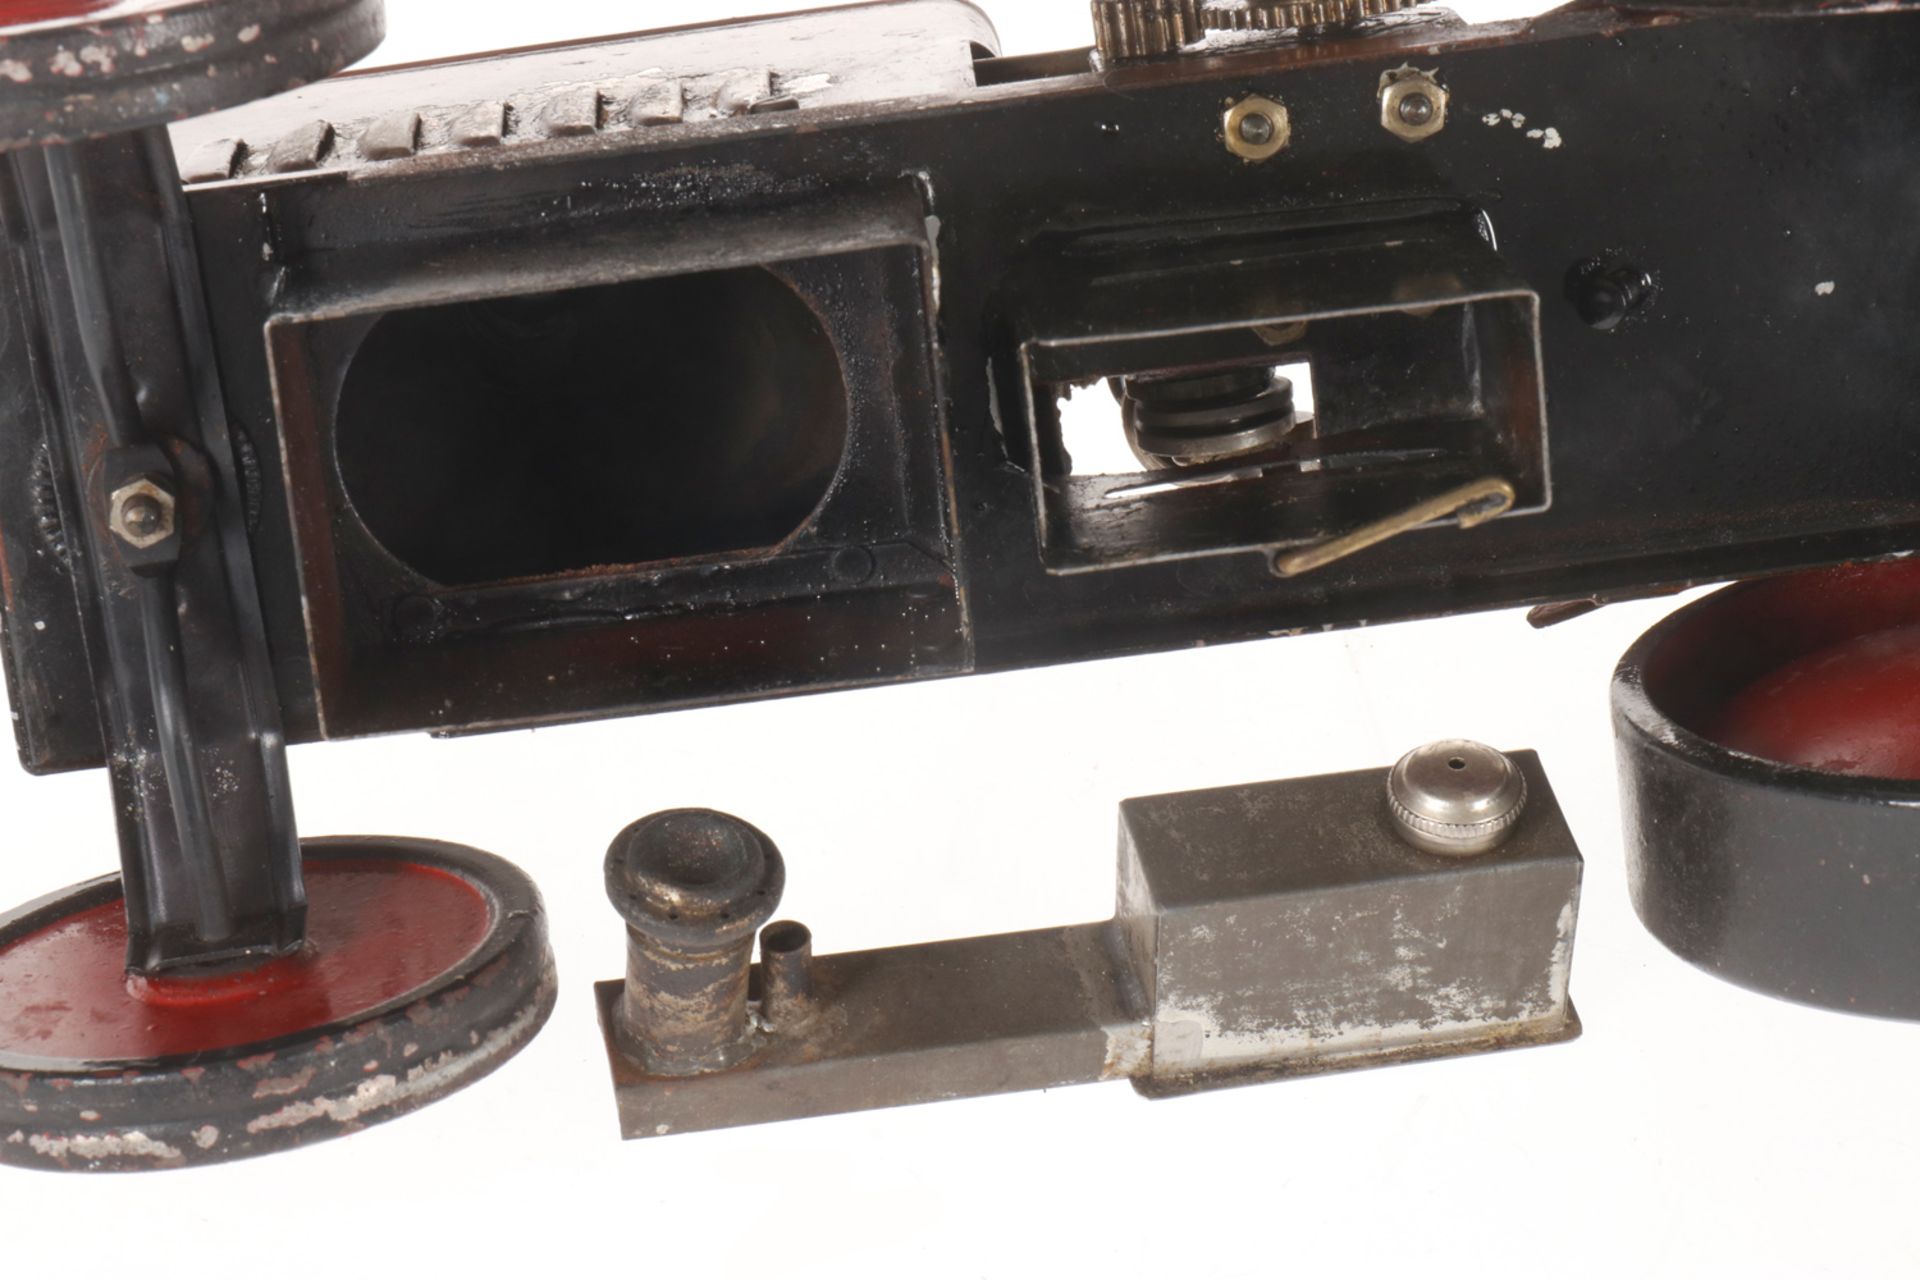 Märklin Dampftraktor 4086, spiritusbetrieben, handlackiert, mit Brenner und Armaturen, seitlich - Image 4 of 6